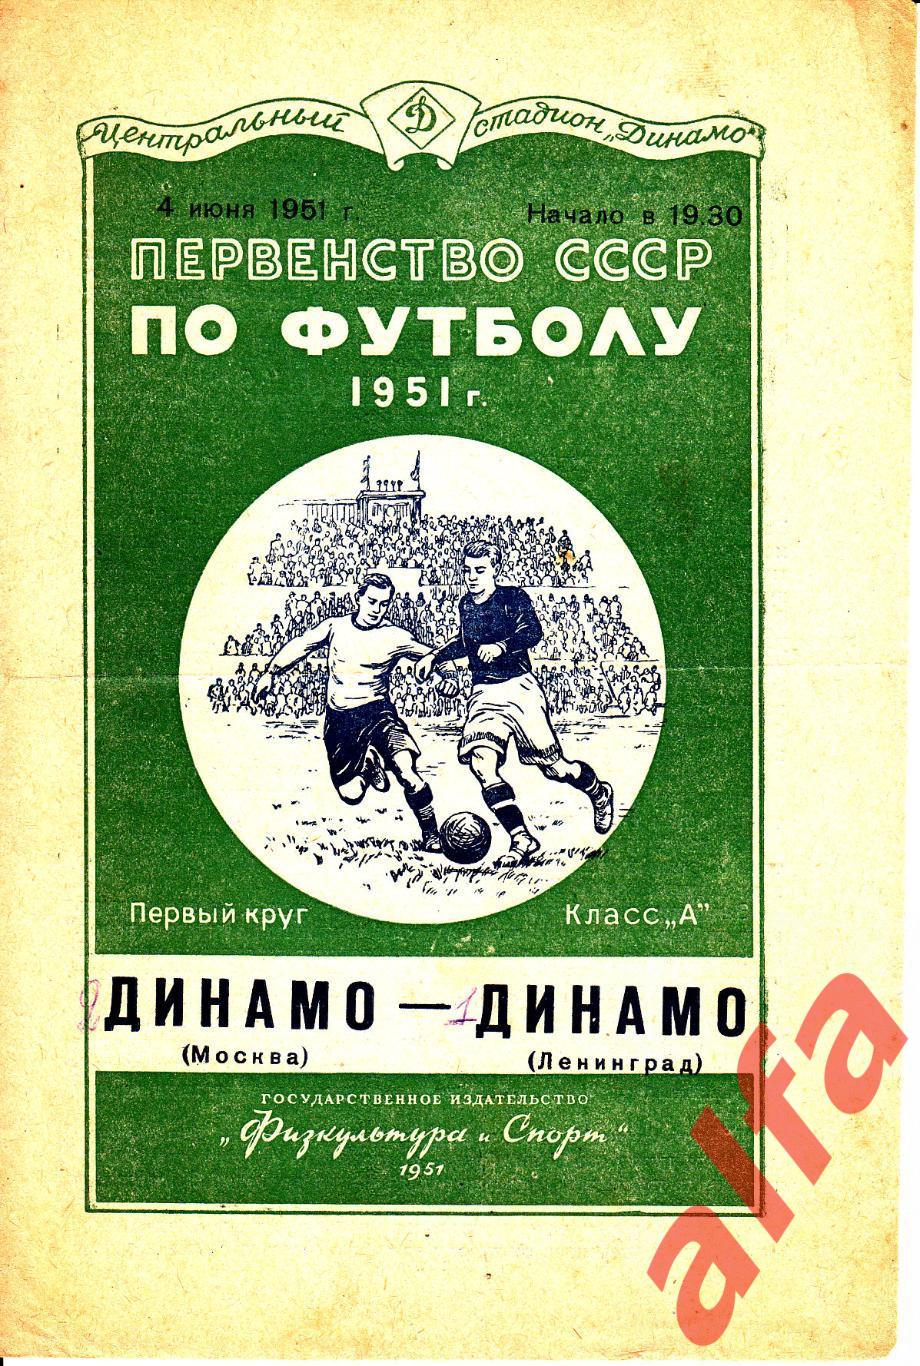 Динамо Москва - Динамо Ленинград 04.06.1951